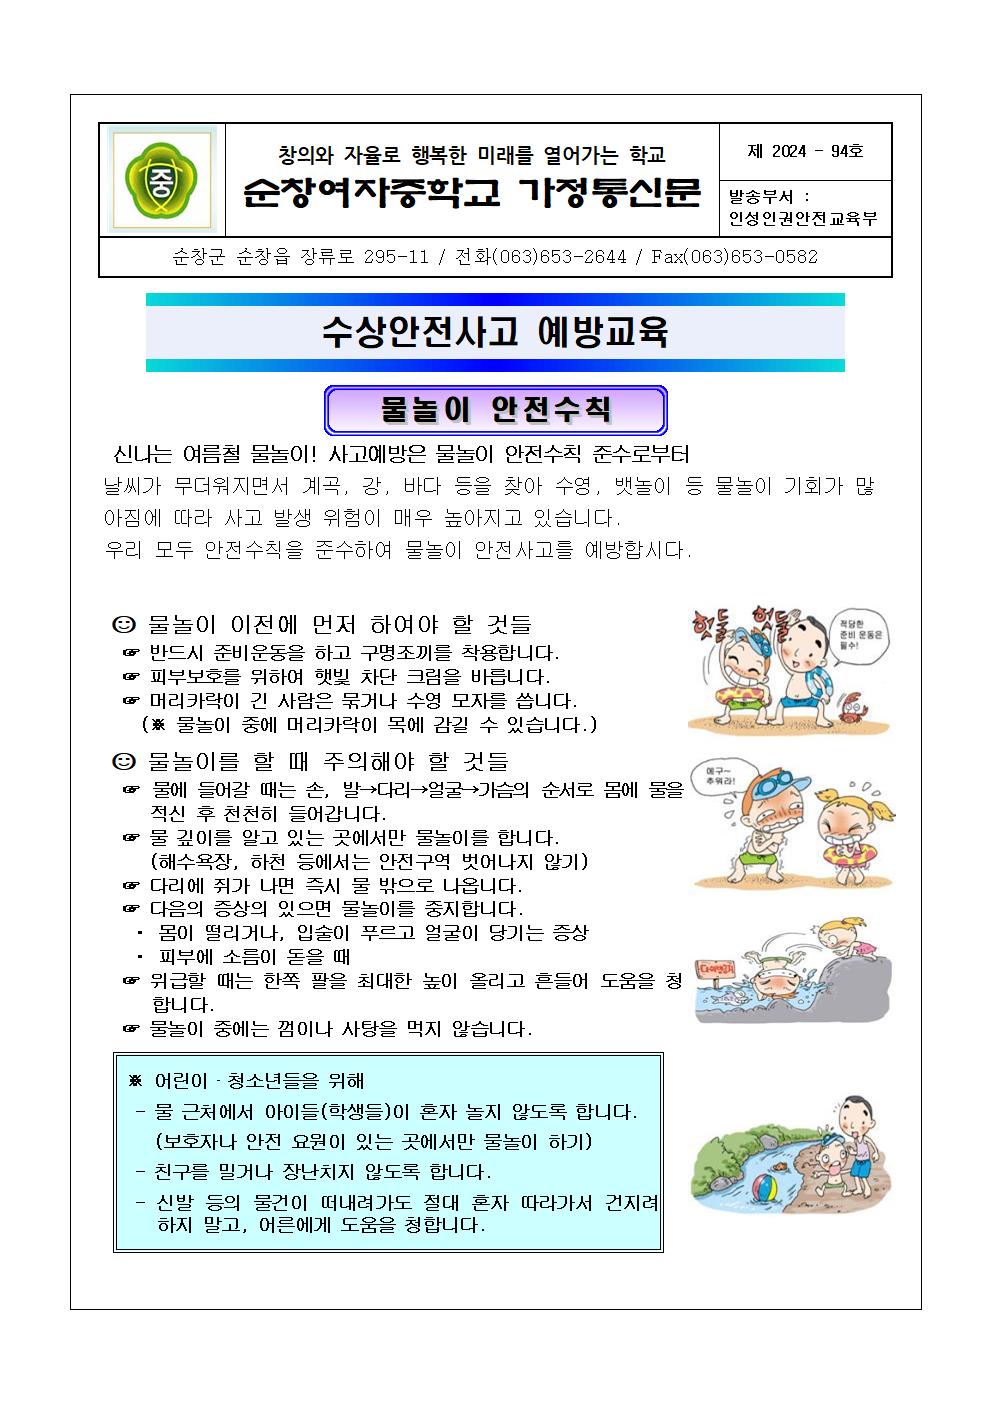 수상안전사고 예방교육 가정통신문001